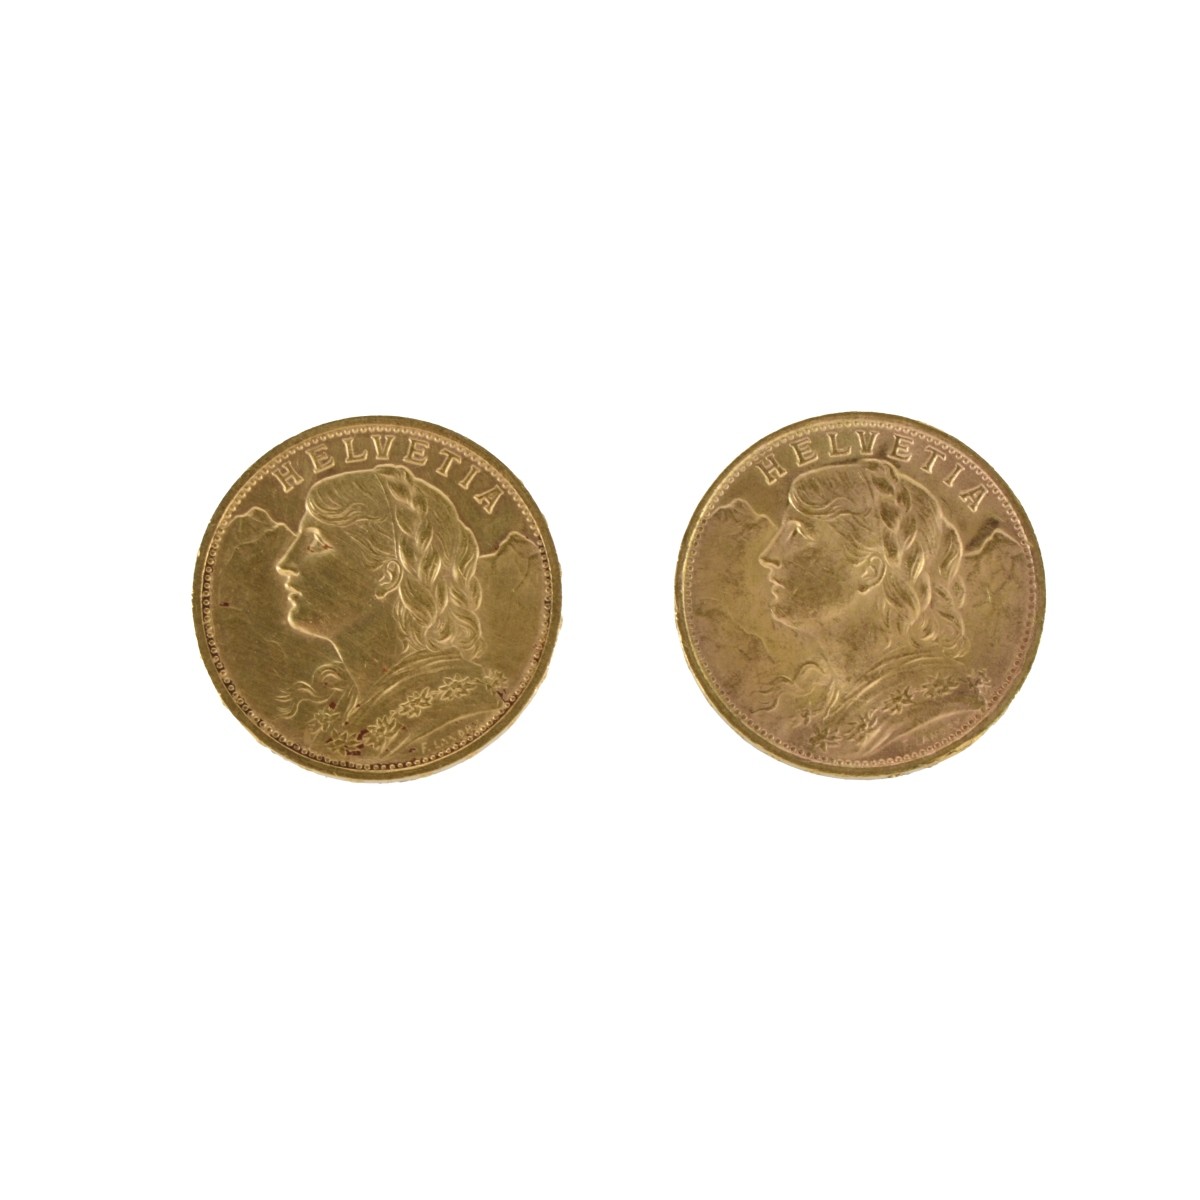 Swiss Helvetia 20 Fr. Gold Coins